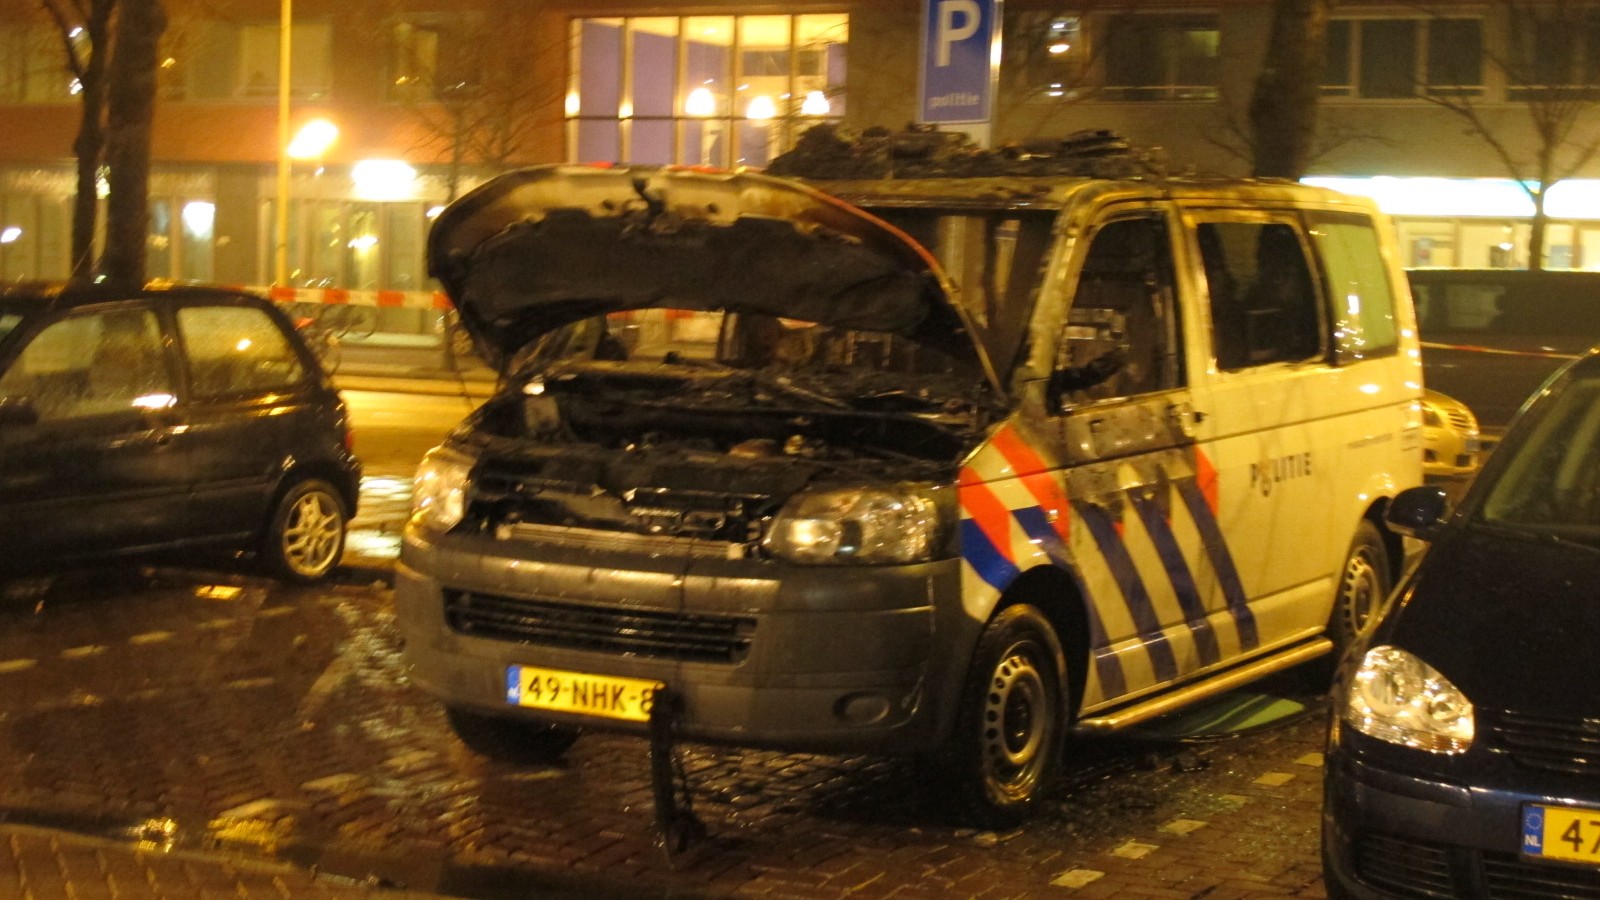 Een politiebusje is hedennacht helemaal uitgebrand op de parkeerplaats voor het politiebureau August Allebeplein perceel 179 in Amsterdam West. Hoe de brand kon ontstaan is nog onduidelijk maar vermoedelijk is hier sprake van brandstichting. Een taxichauf